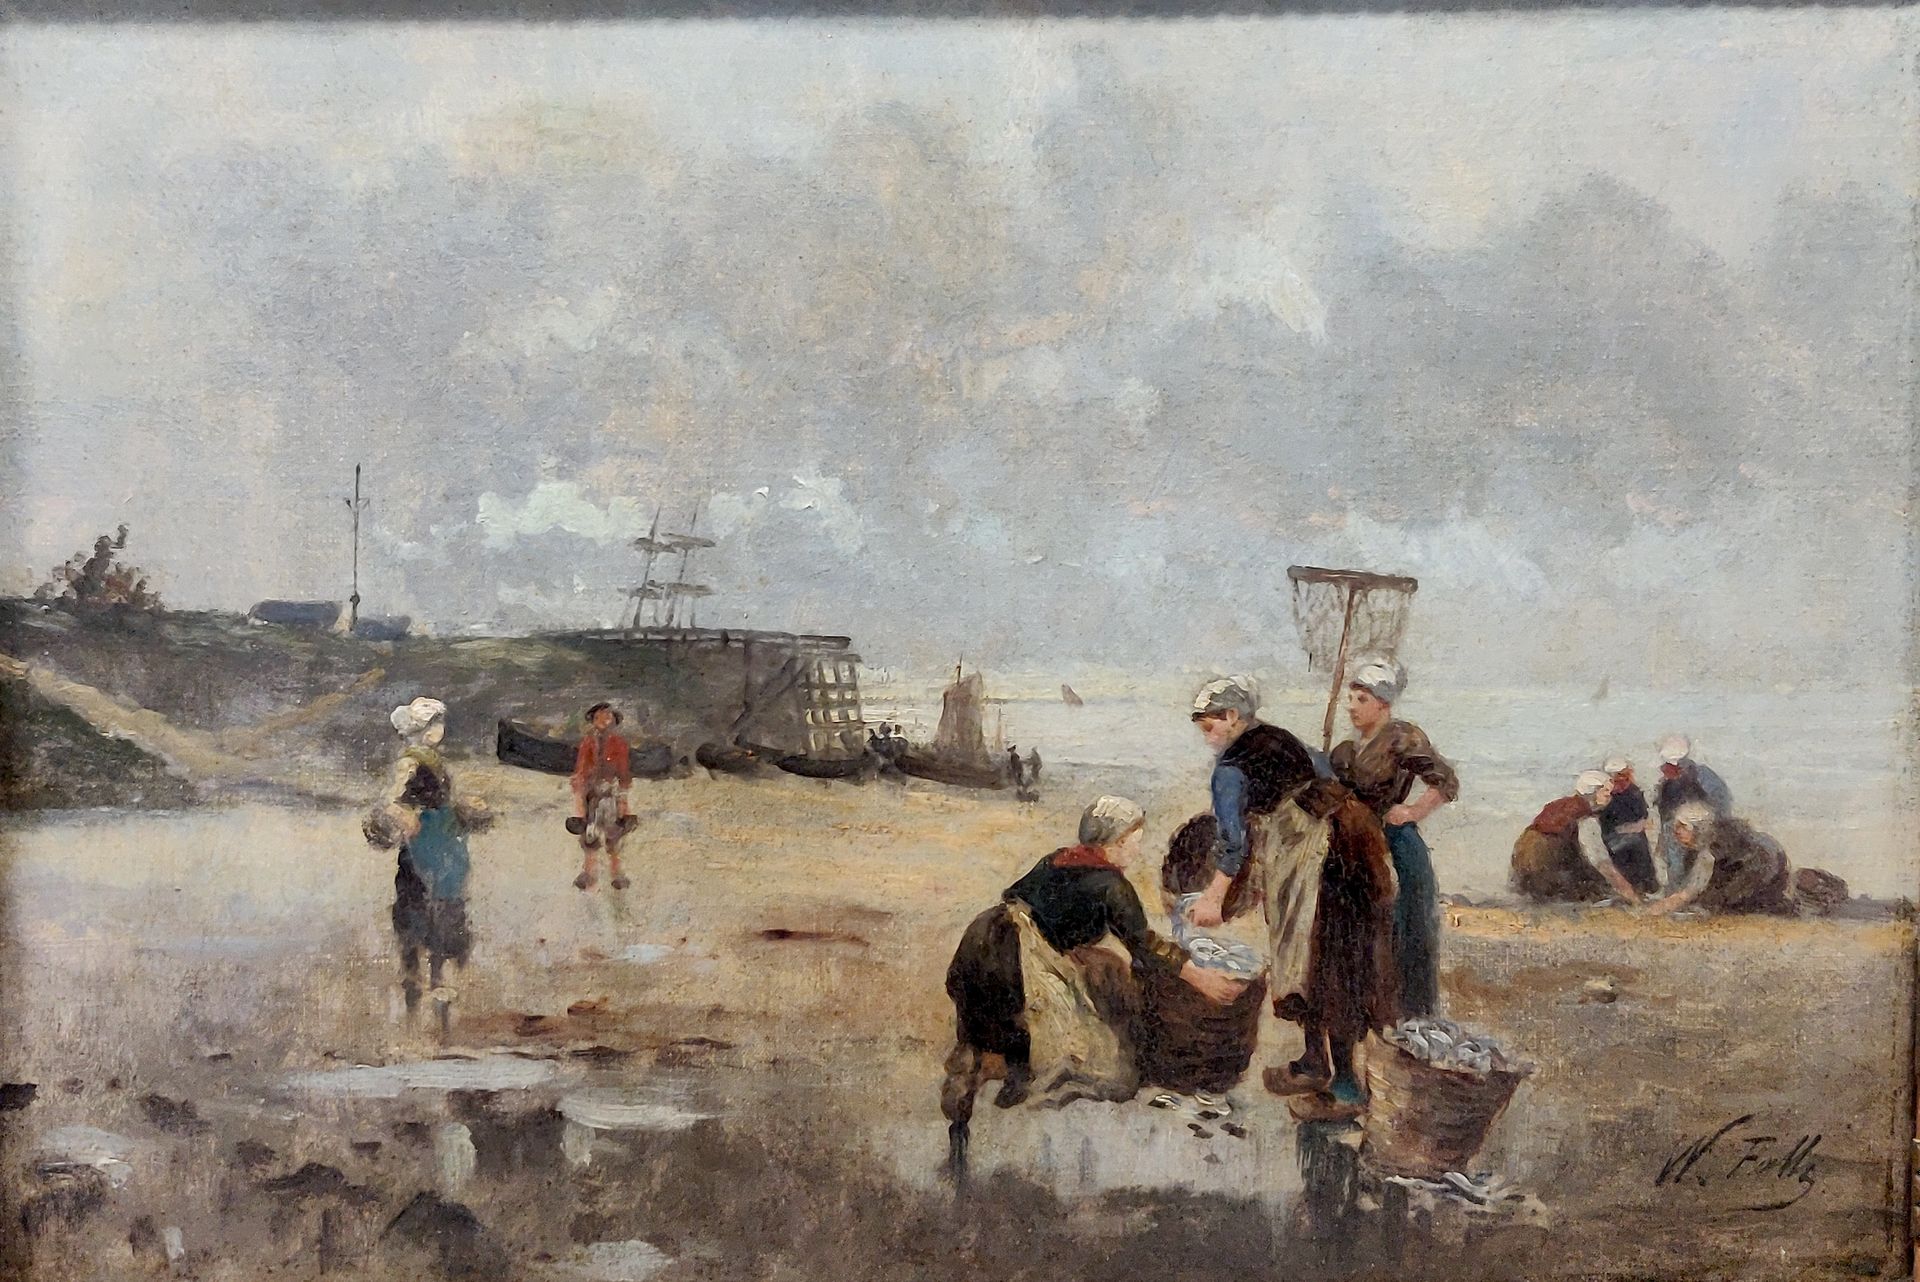 Null 19世纪末-20世纪初的学校。退潮时的女渔民。布面油画，右下角有签名(W. Falls?)。38 x 55厘米。